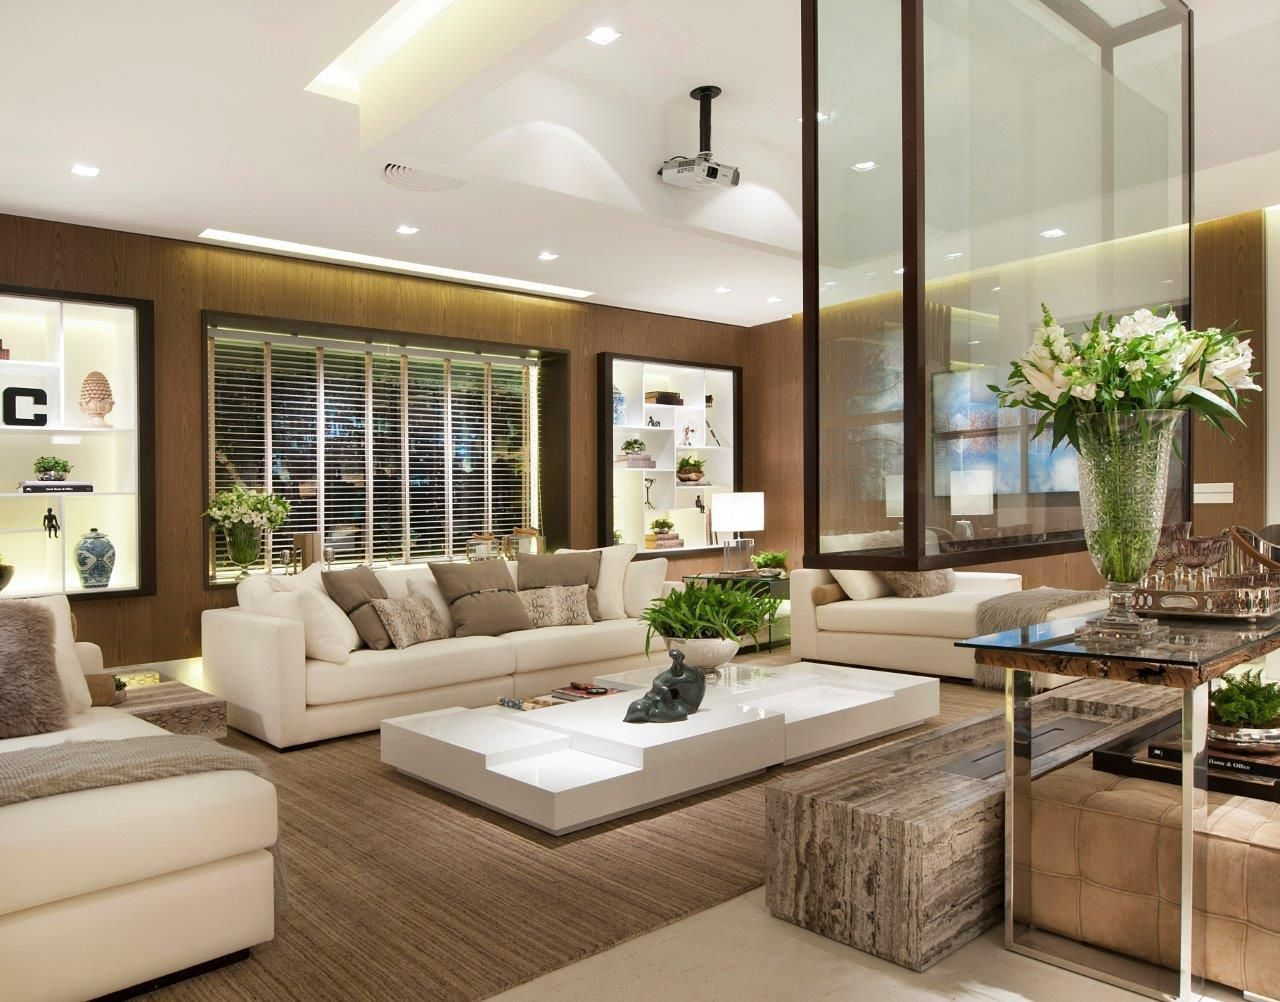 Living room fusion decor contemporary